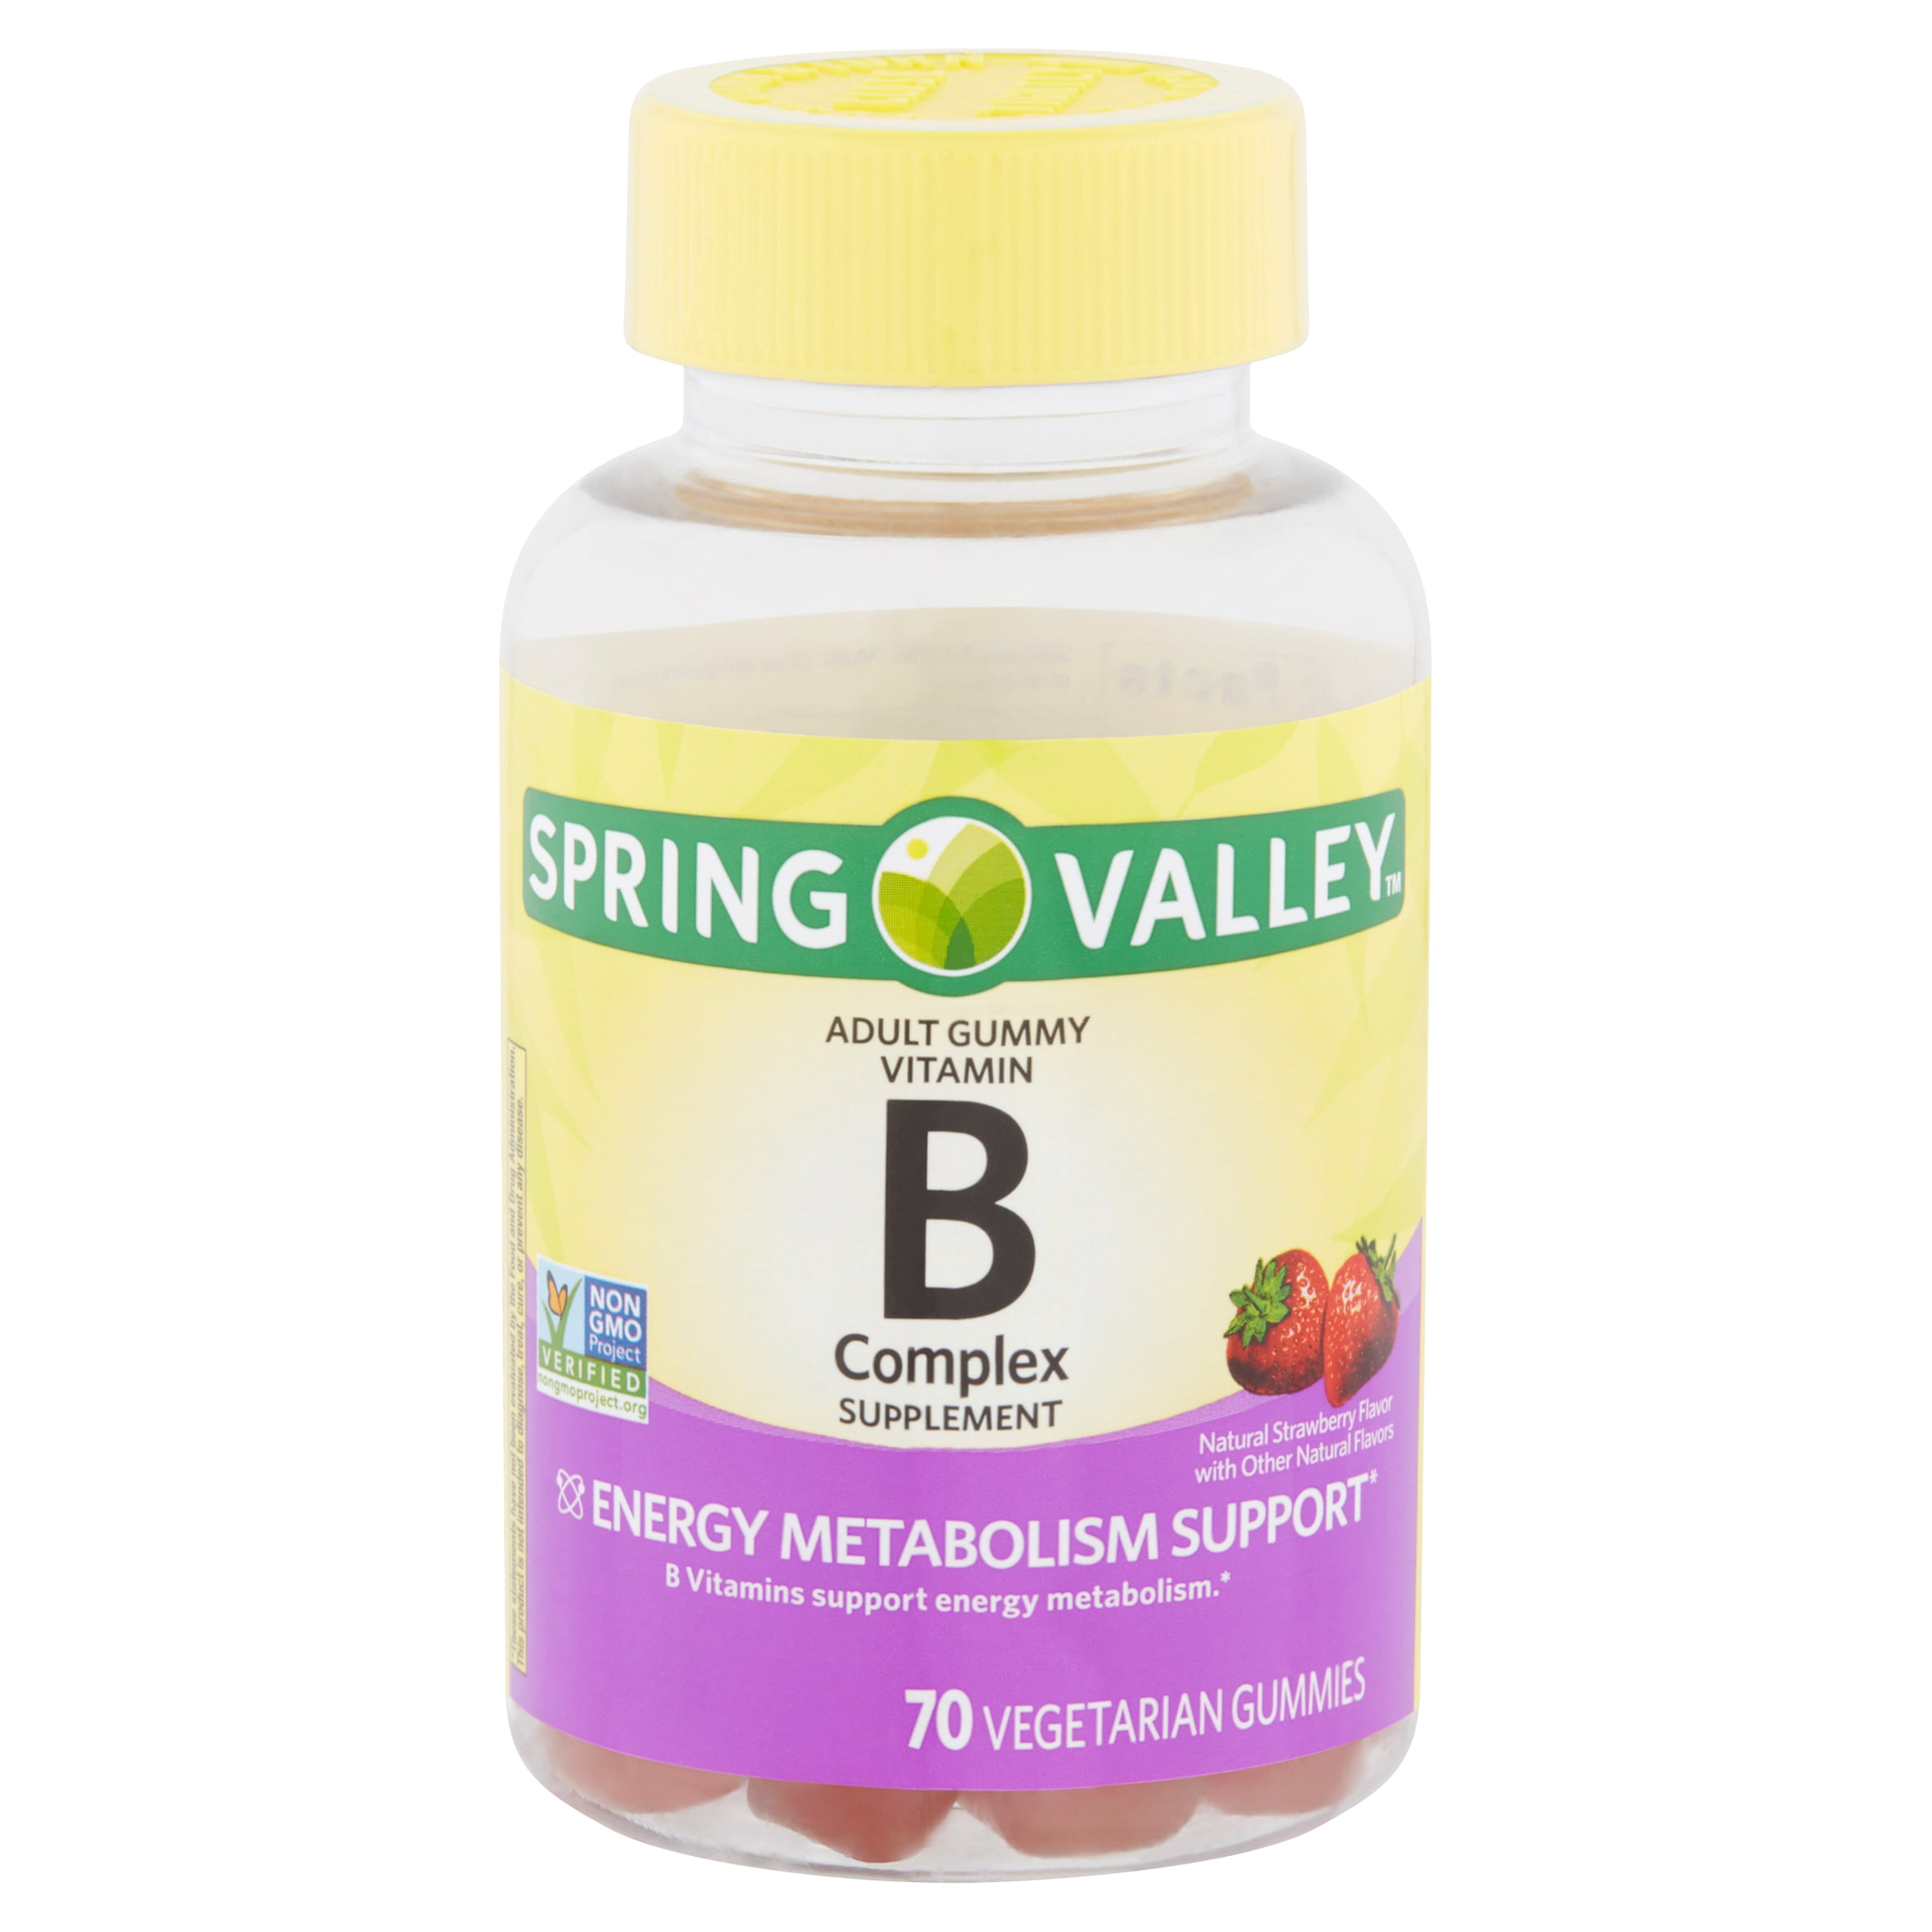 Spring Valley Vitamin B Complex Supplement Adult Vegetarian Gummies 70